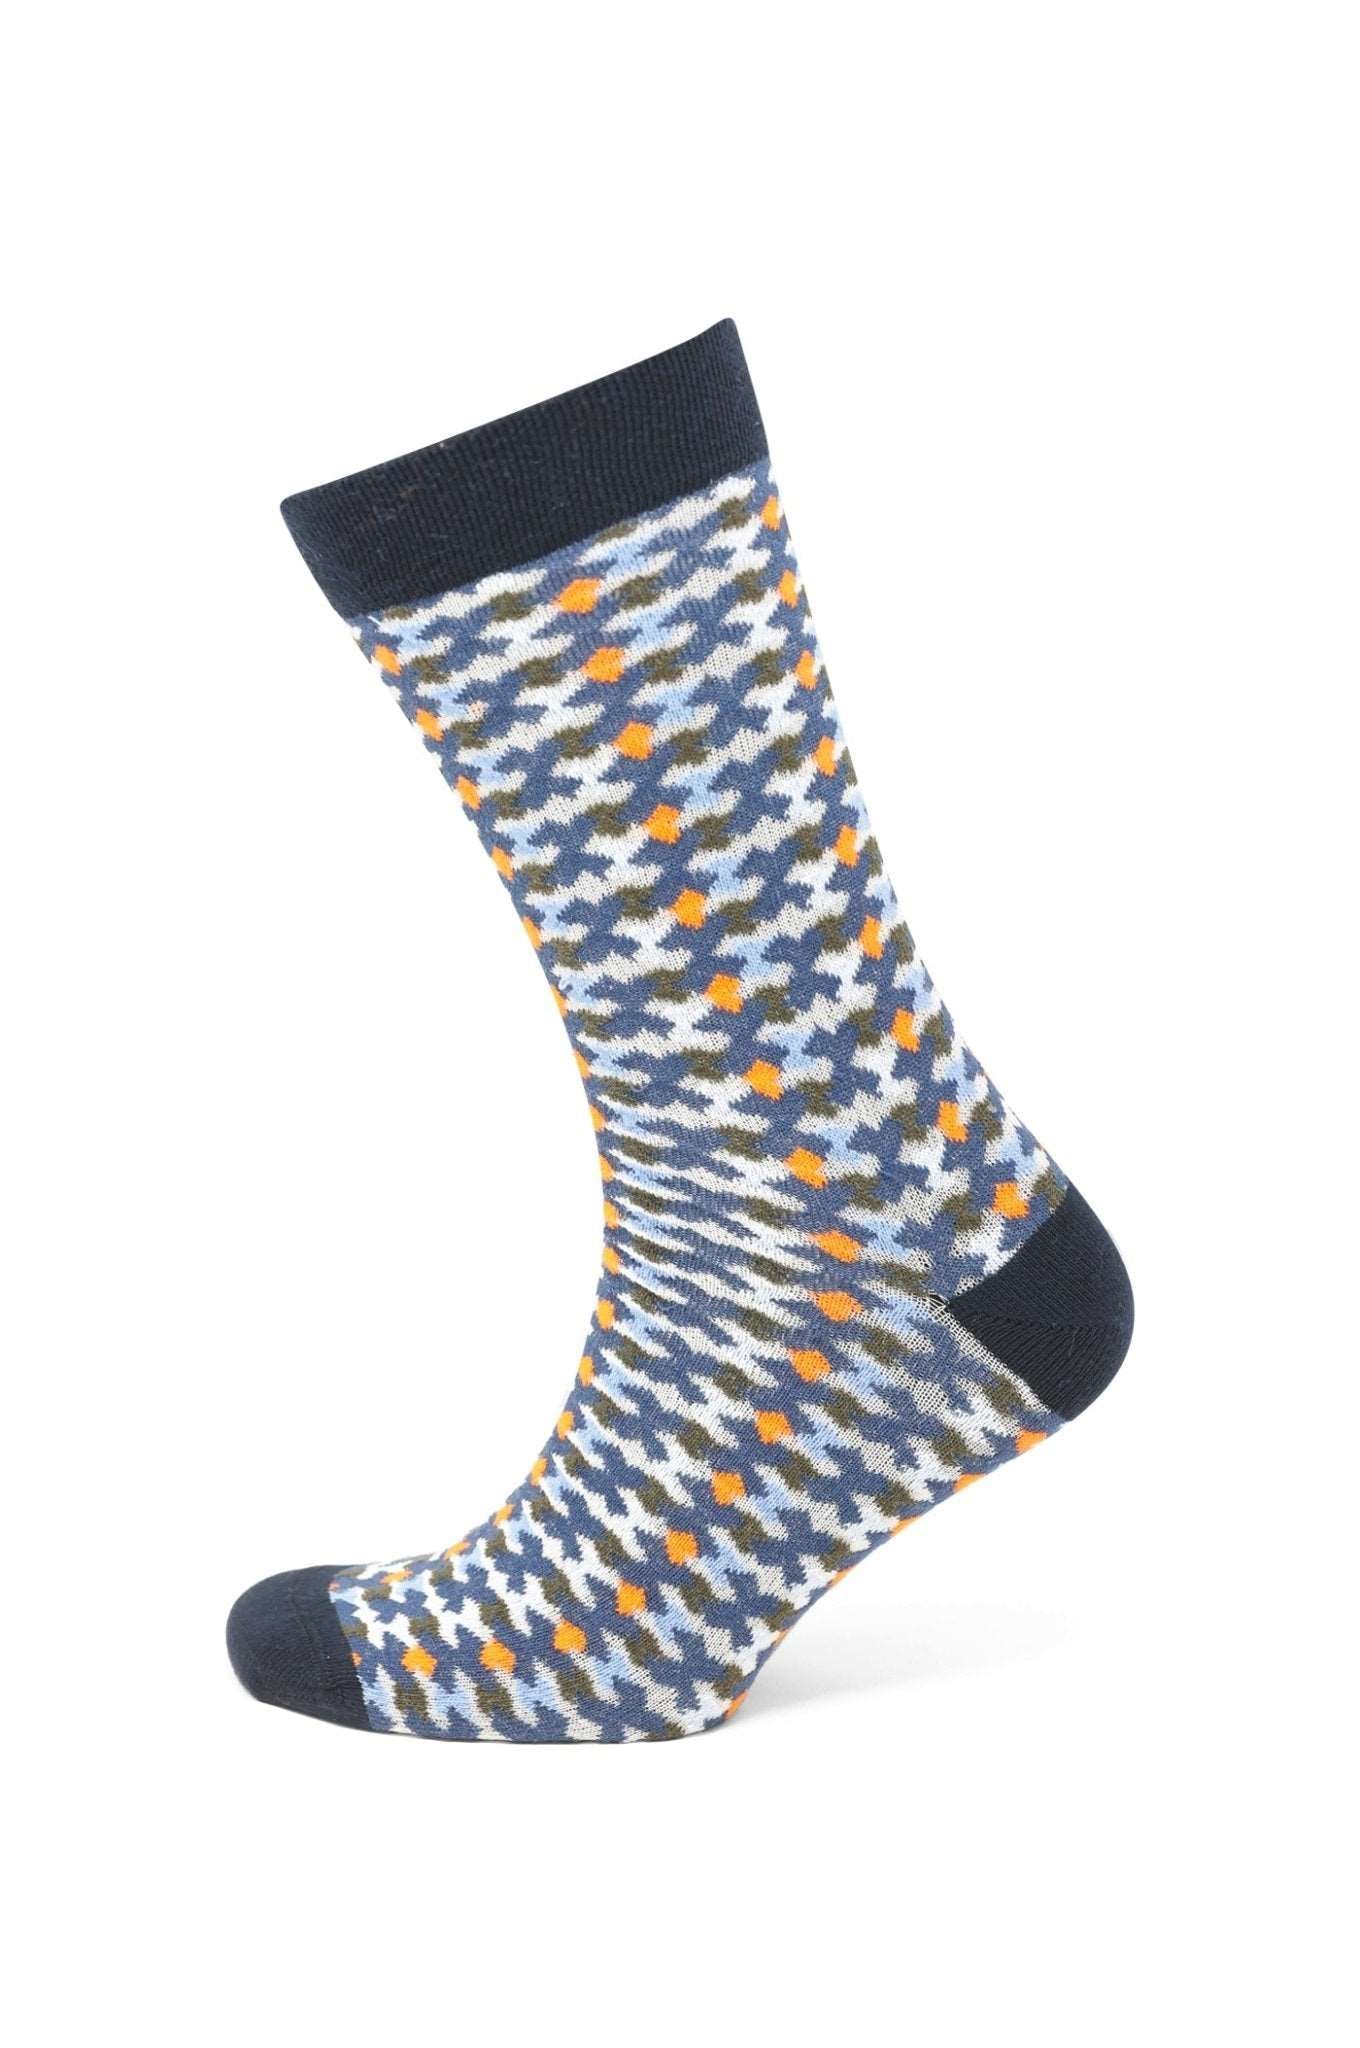 Modische Socke mit Muster - Blau/Gelb - REAL GUYS